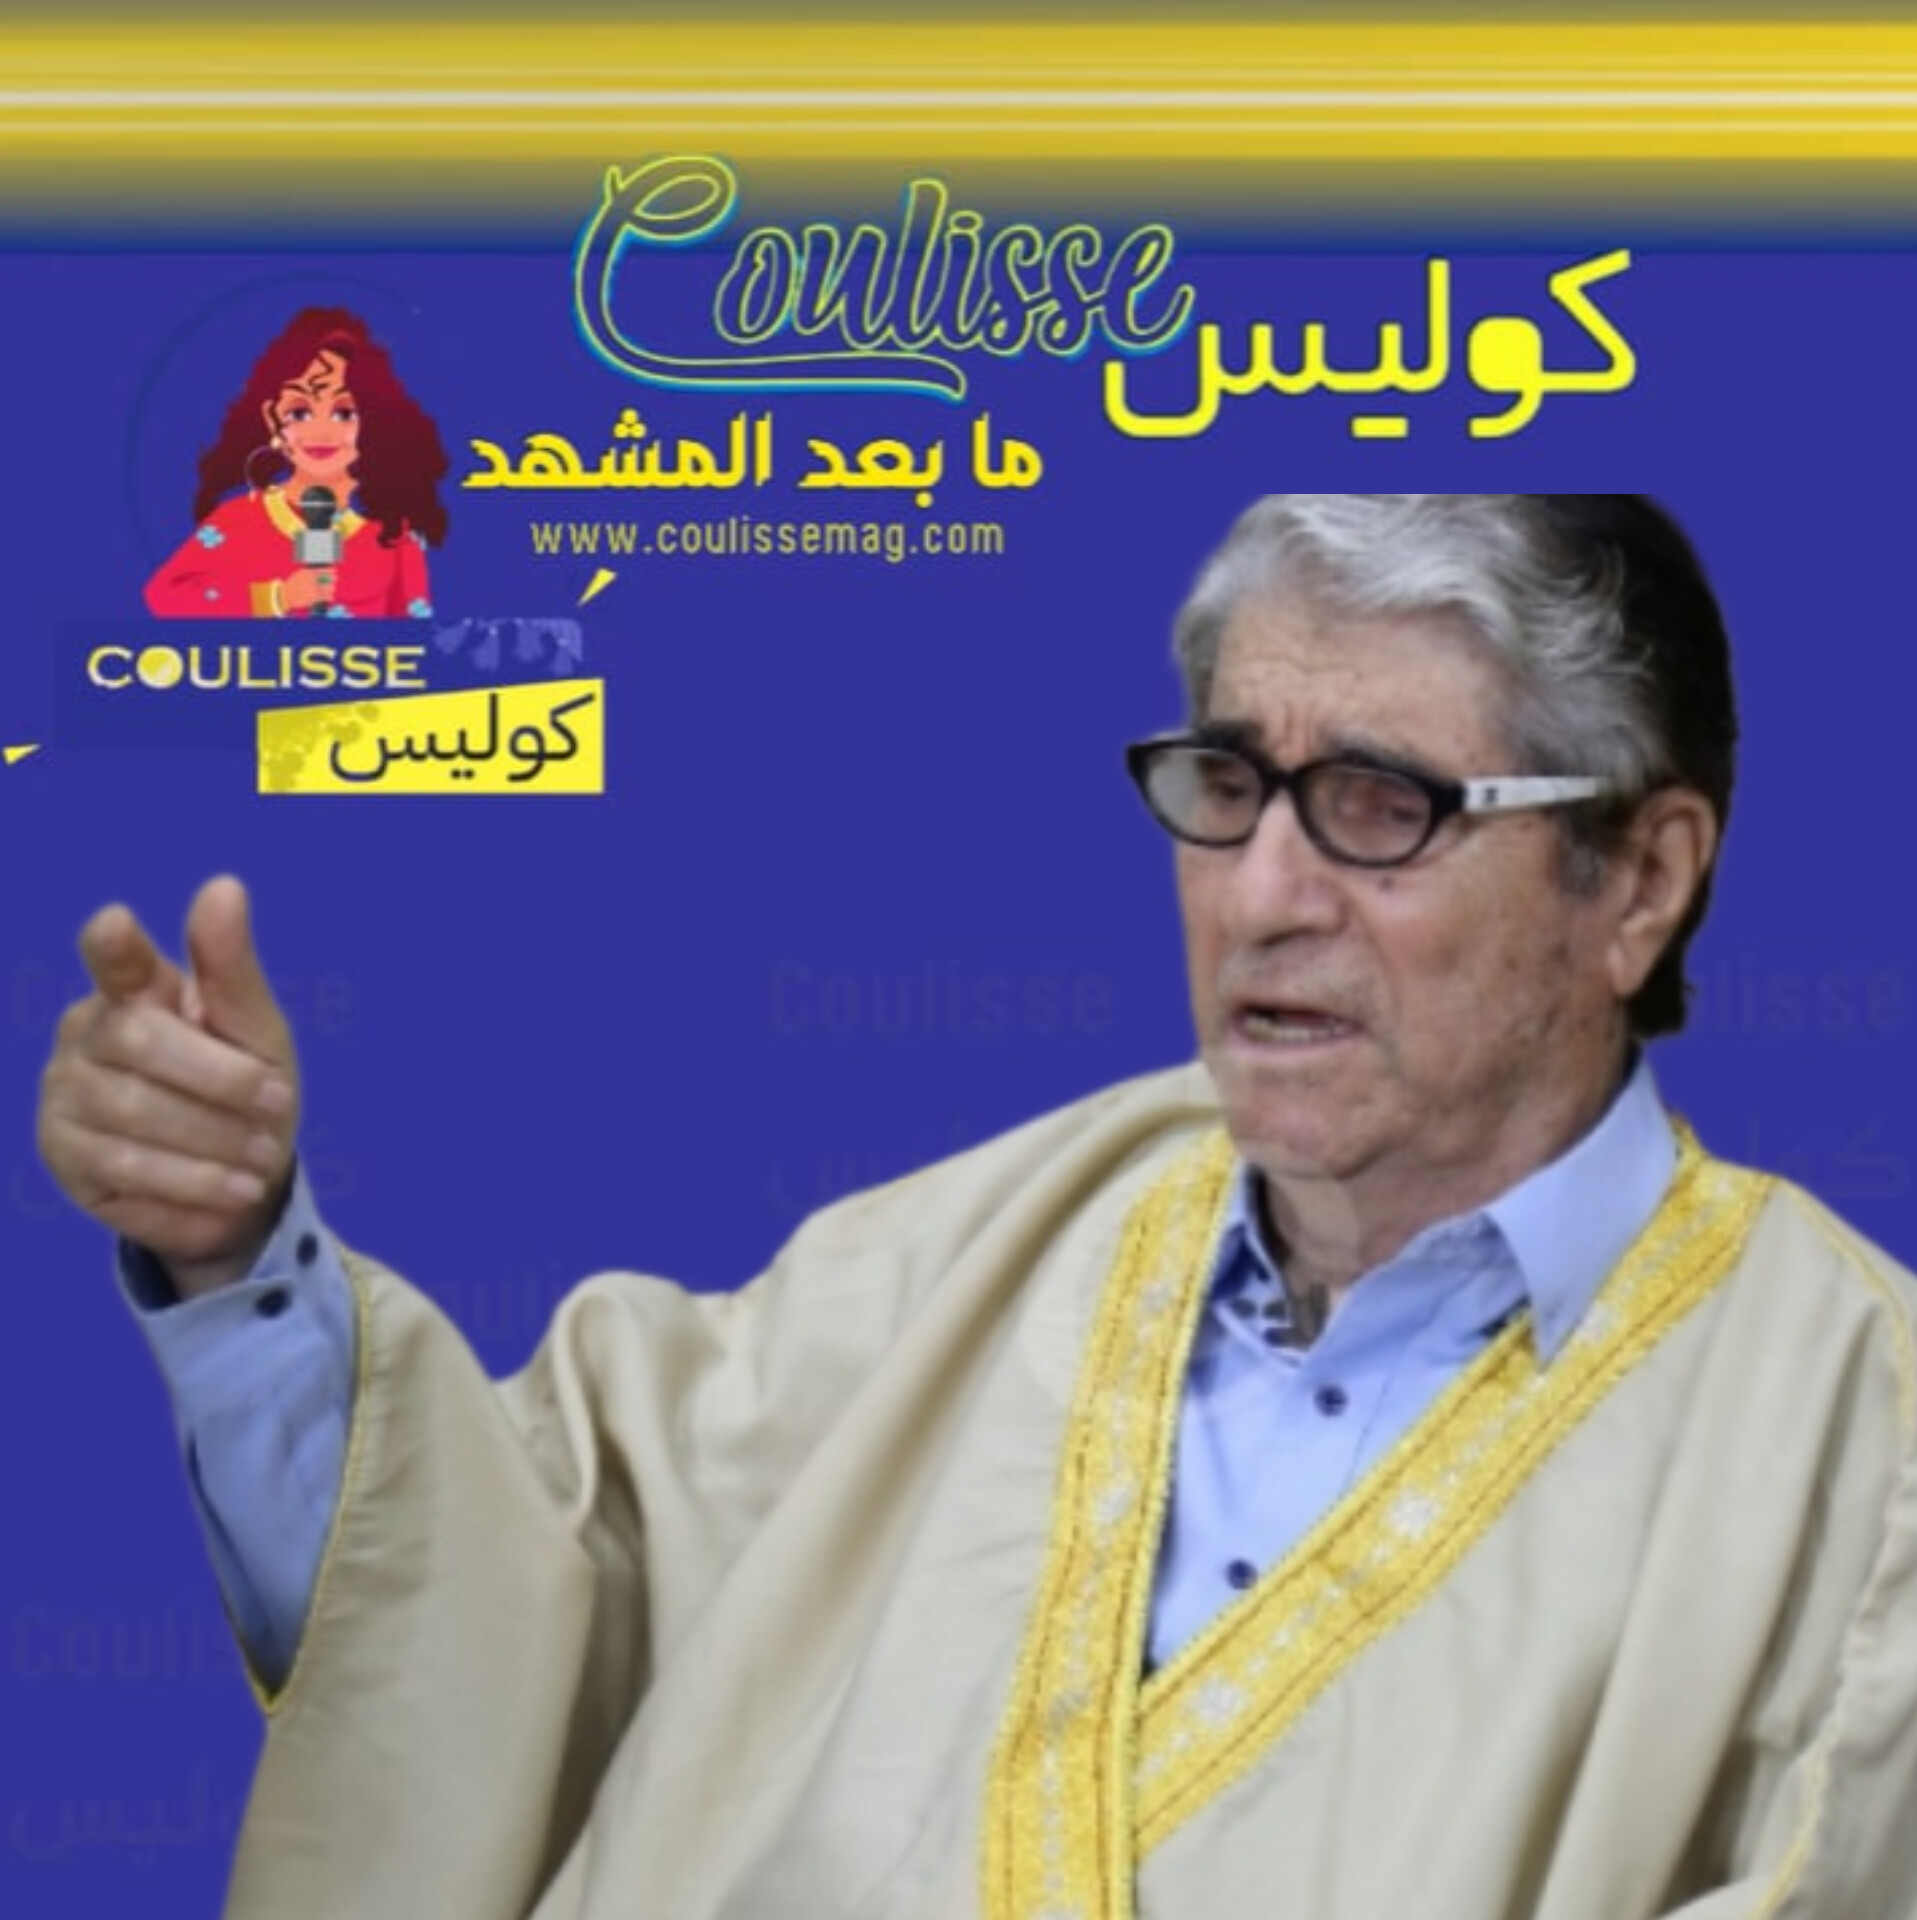 لحظة وقوع الفنان اللبناني صلاح تيزاني أبو سليم في مهرجان الزمن الجميل! – فيديو